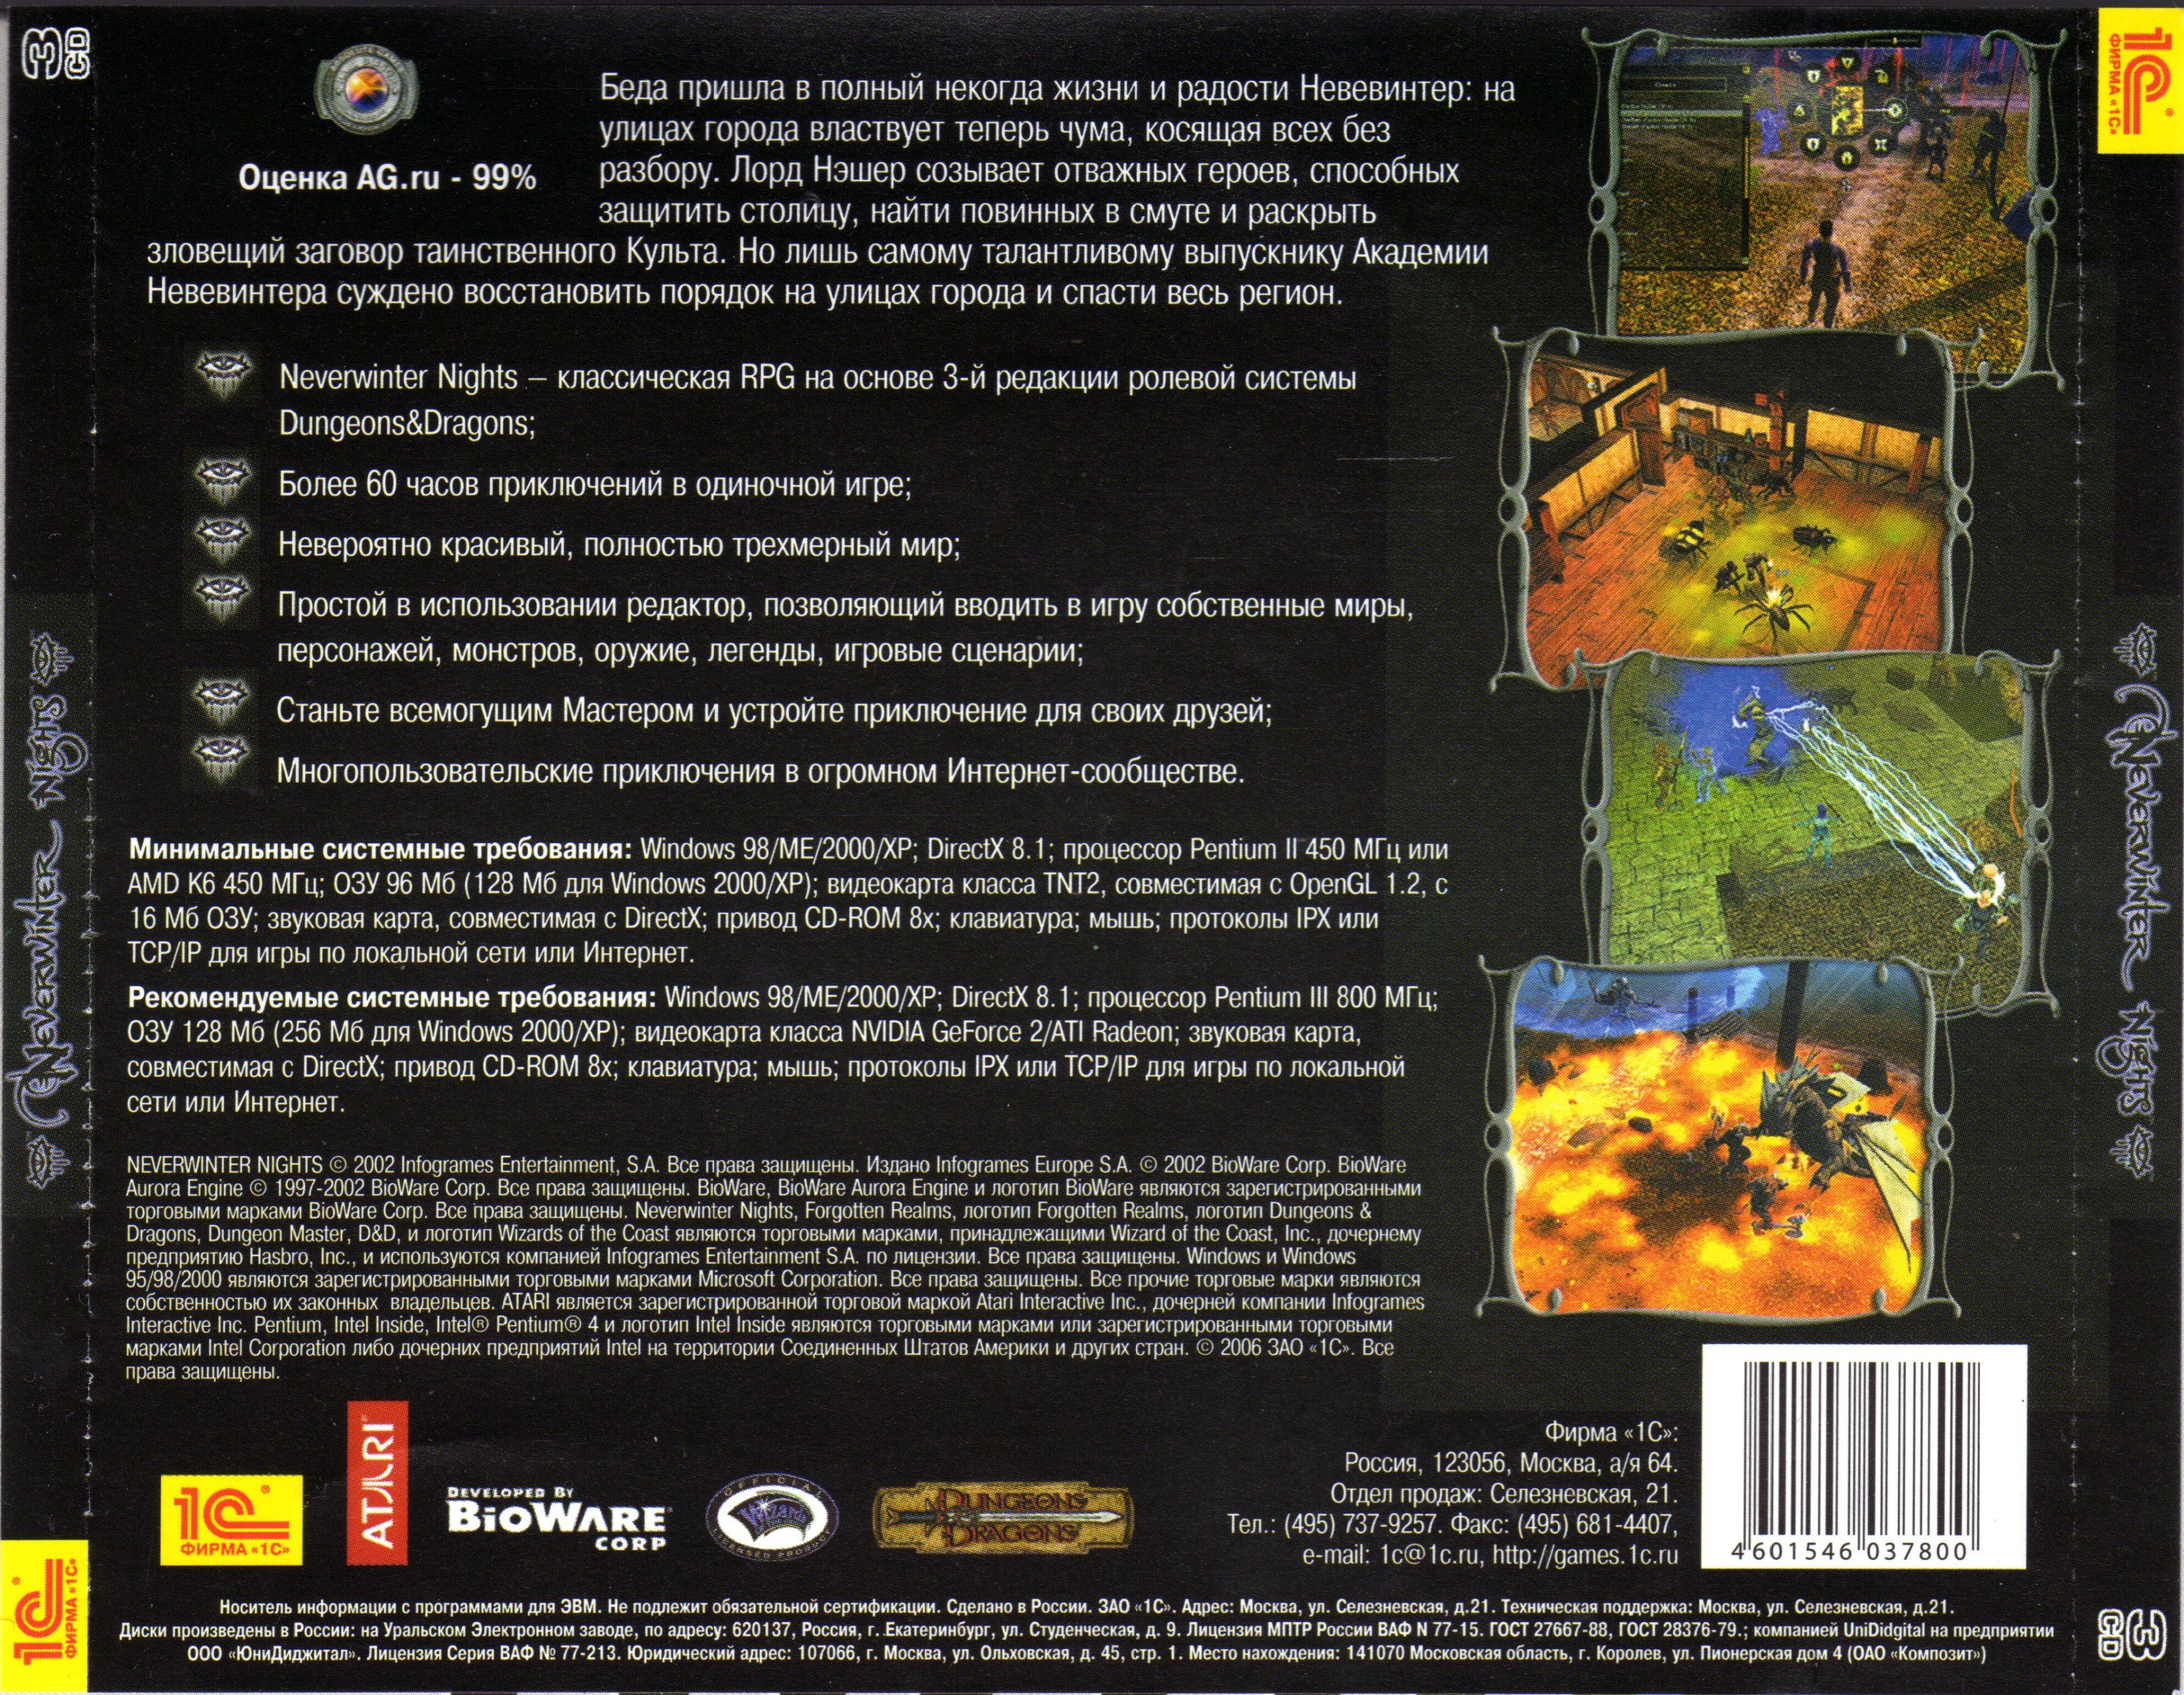 Мир сценарий игра. Neverwinter Nights обложка игры. Neverwinter Nights обложки дисков. Neverwinter Nights обложки дисков 2002. Neverwinter Nights игра 1991 список компьютерных игр Dungeons Dragons.